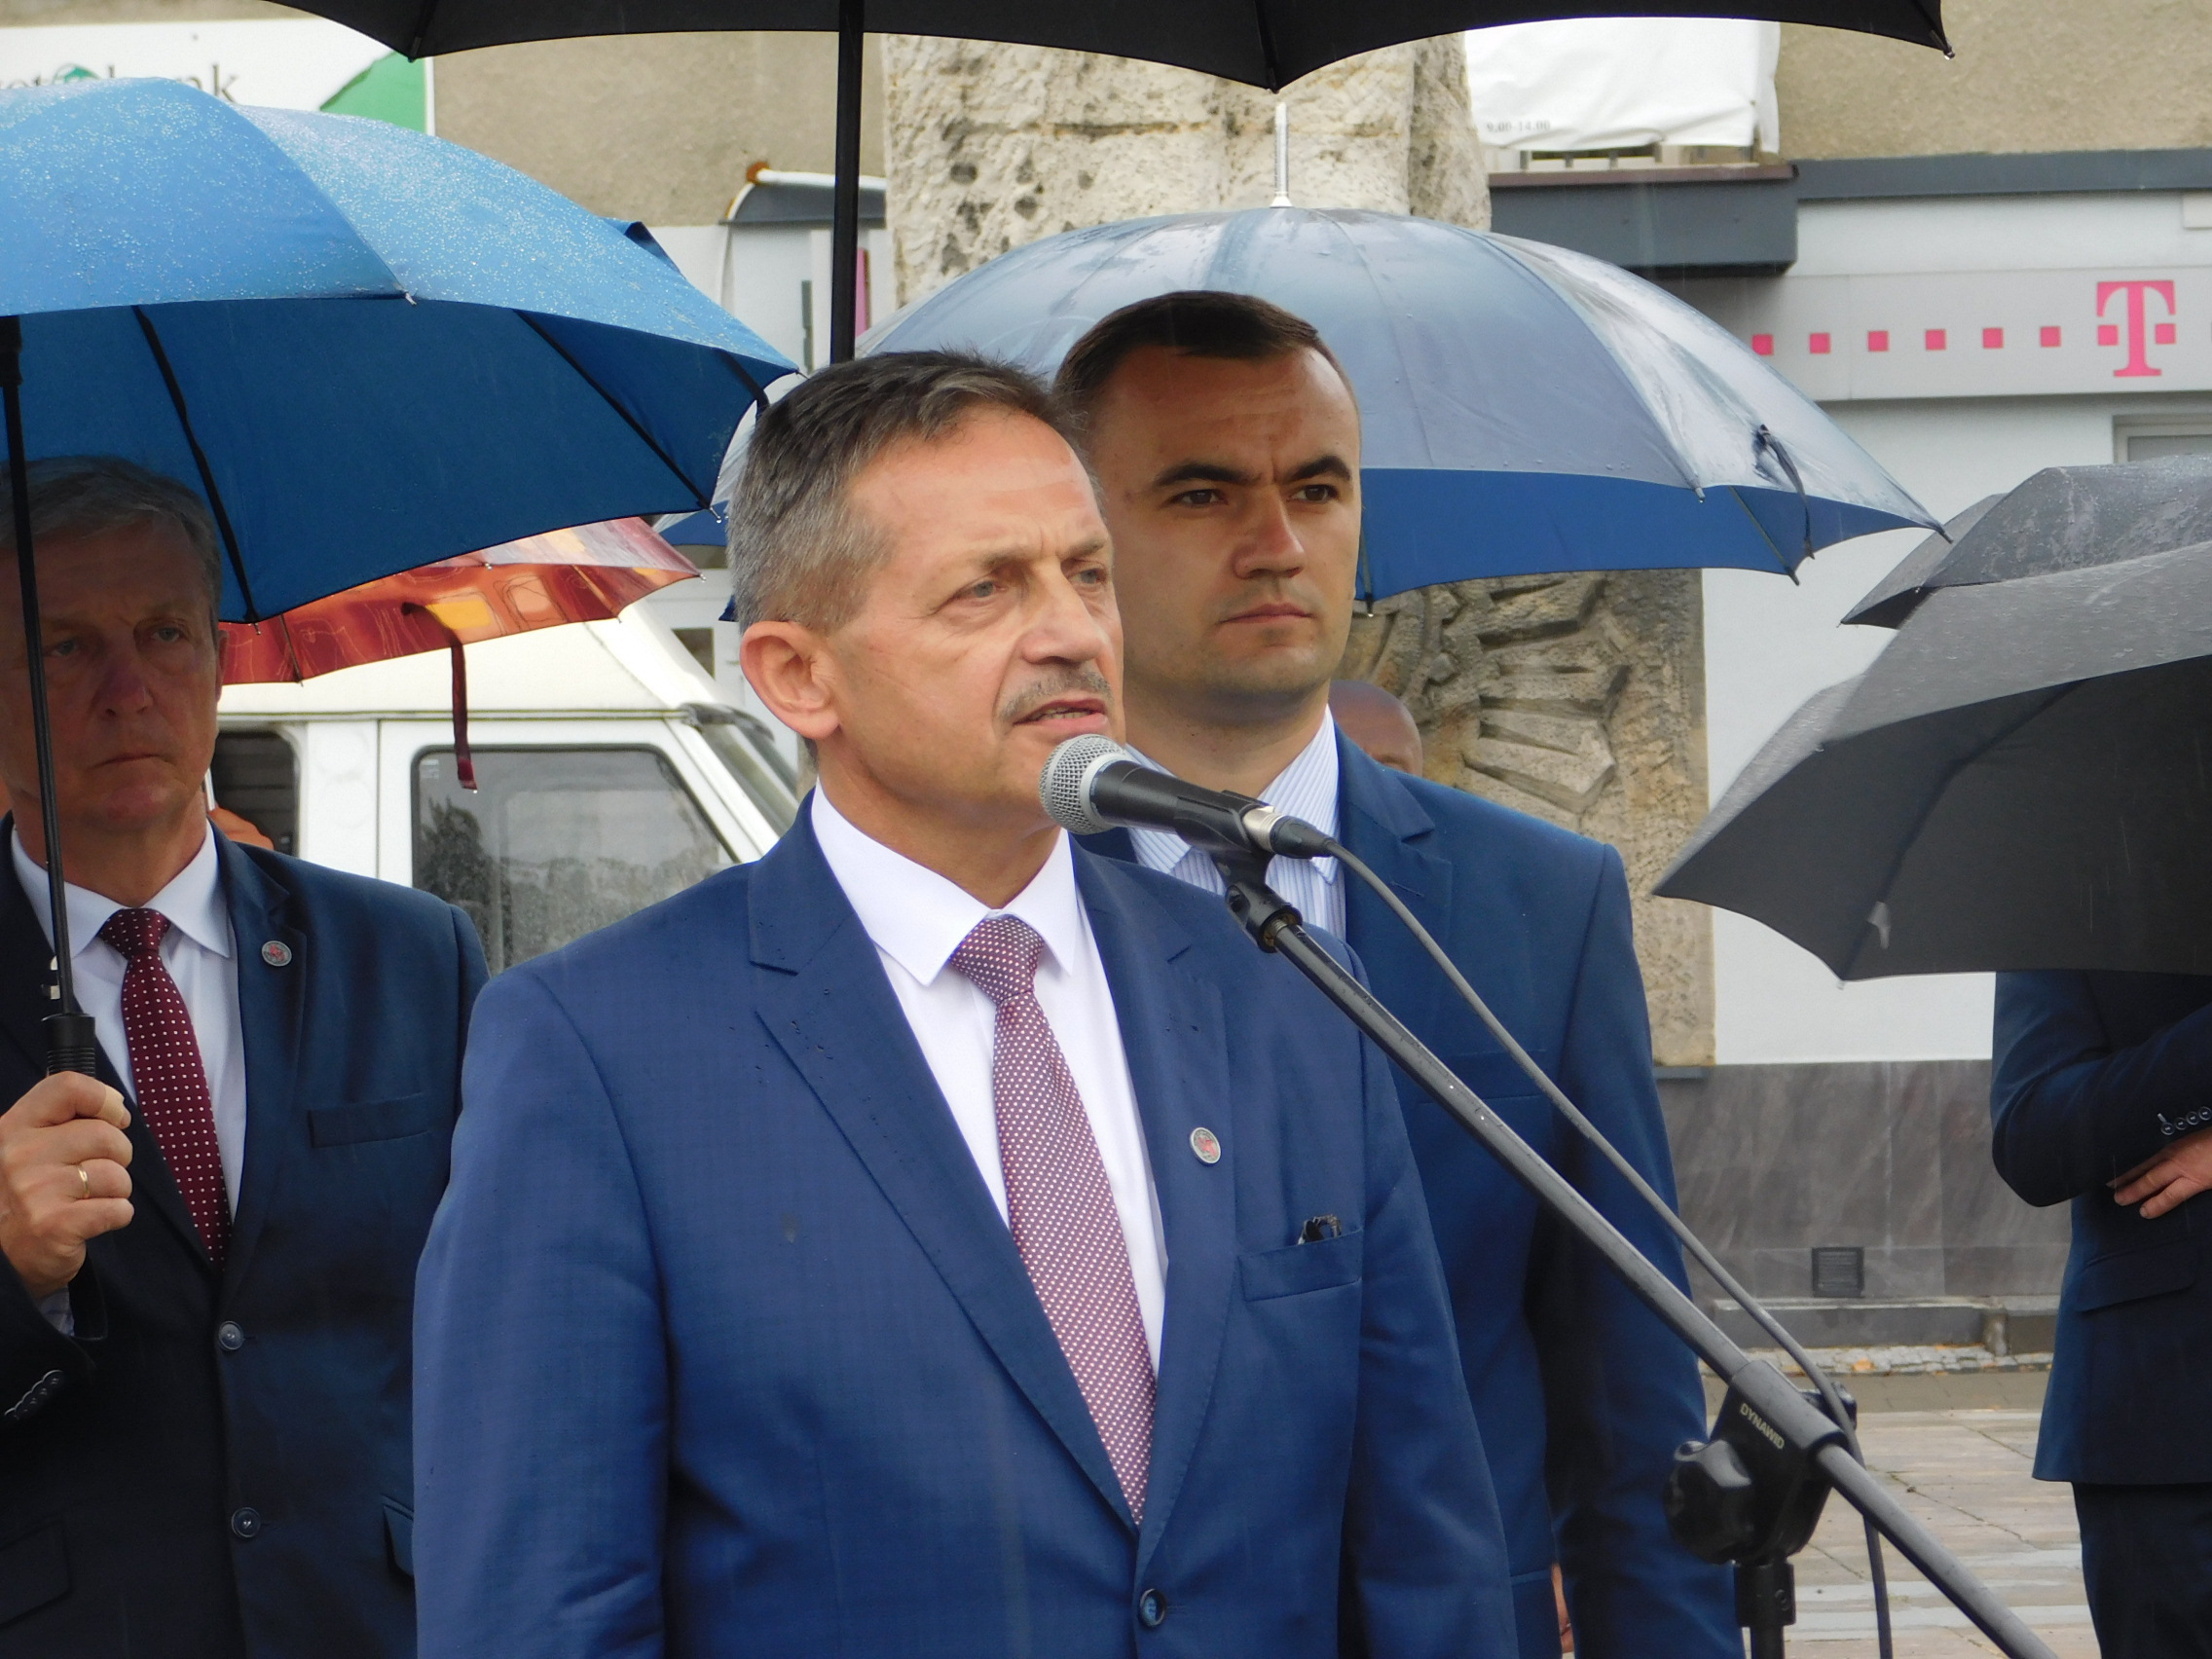 Burmistrz Radzynia przebywa na kwarantannie  - Zdjęcie główne